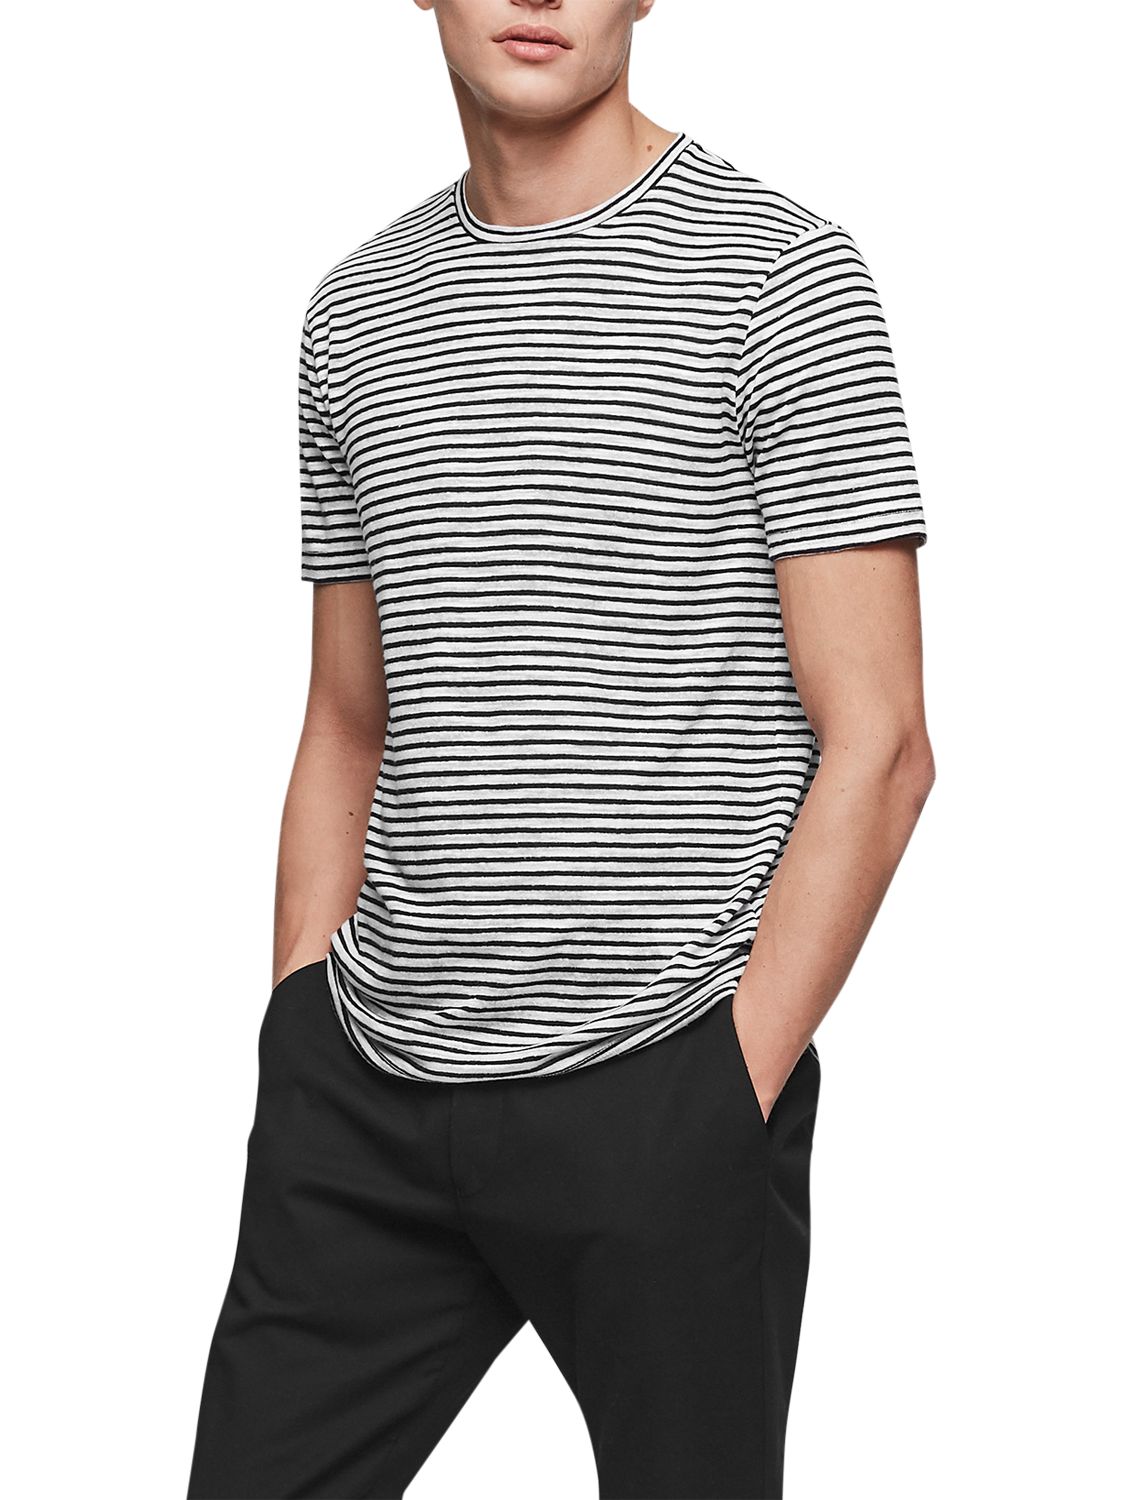 Reiss Dobcot Linen Blend Stripe T-Shirt, Ecru, S